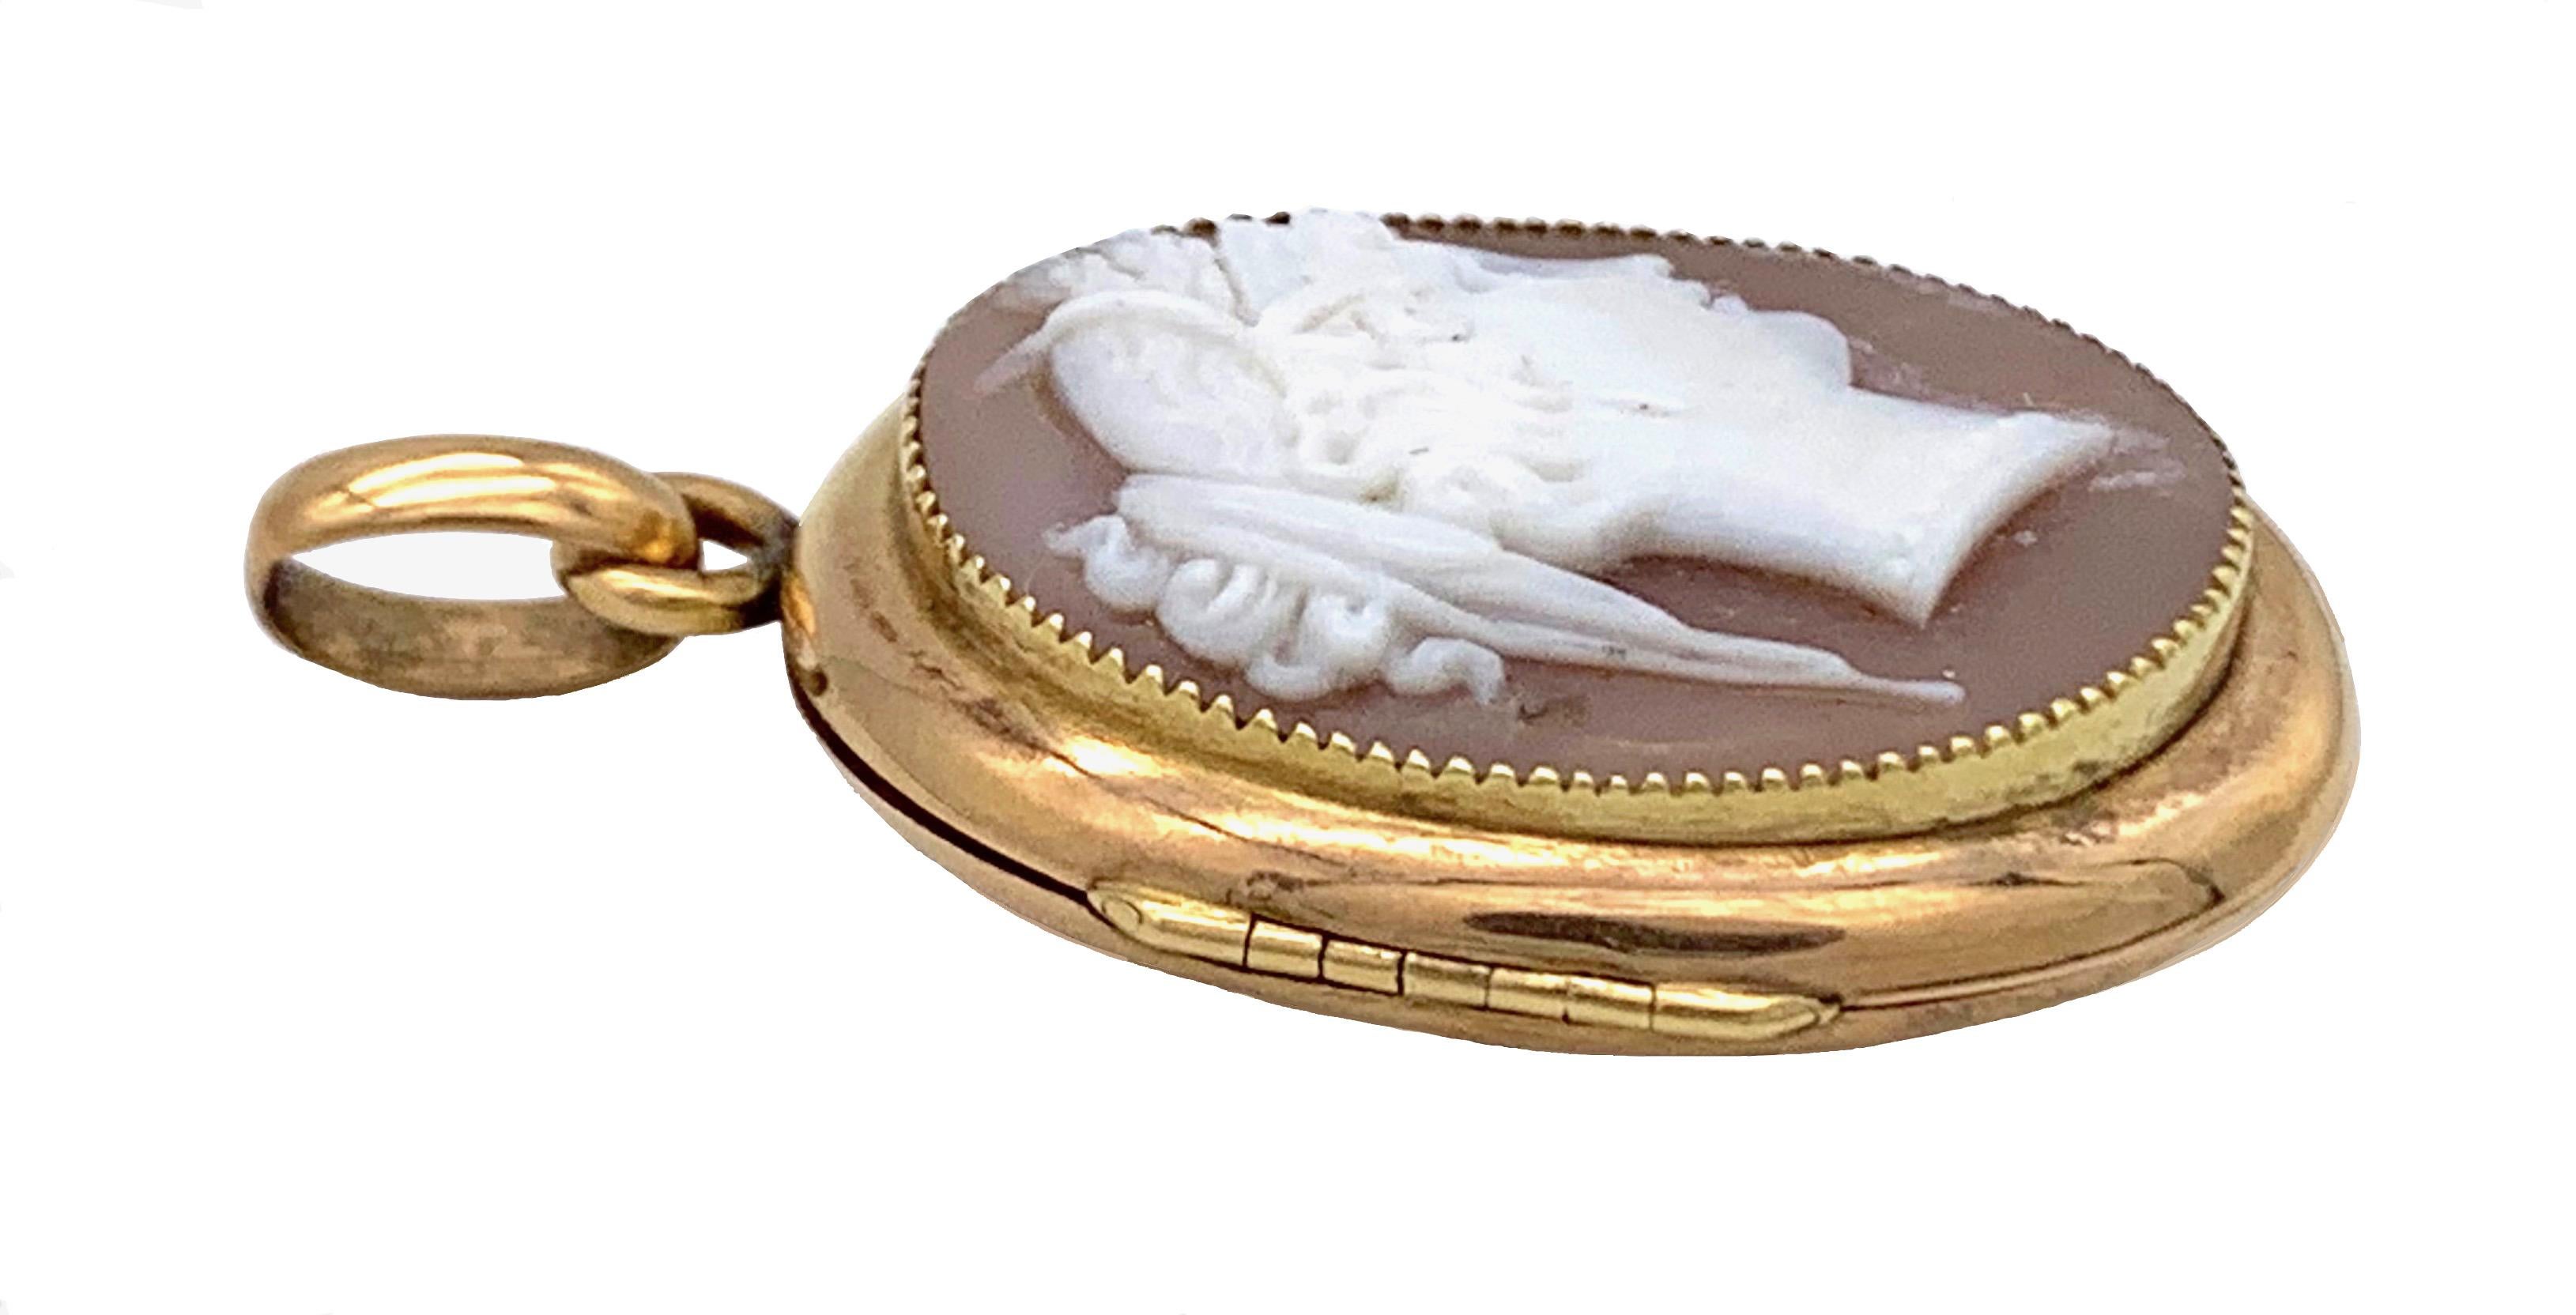 Cet élégant médaillon est serti d'un camée ovale en coquillage finement sculpté représentant le profil d'une jeune femme à la manière antique. Le camée a été monté dans un médaillon en or 14 carats.